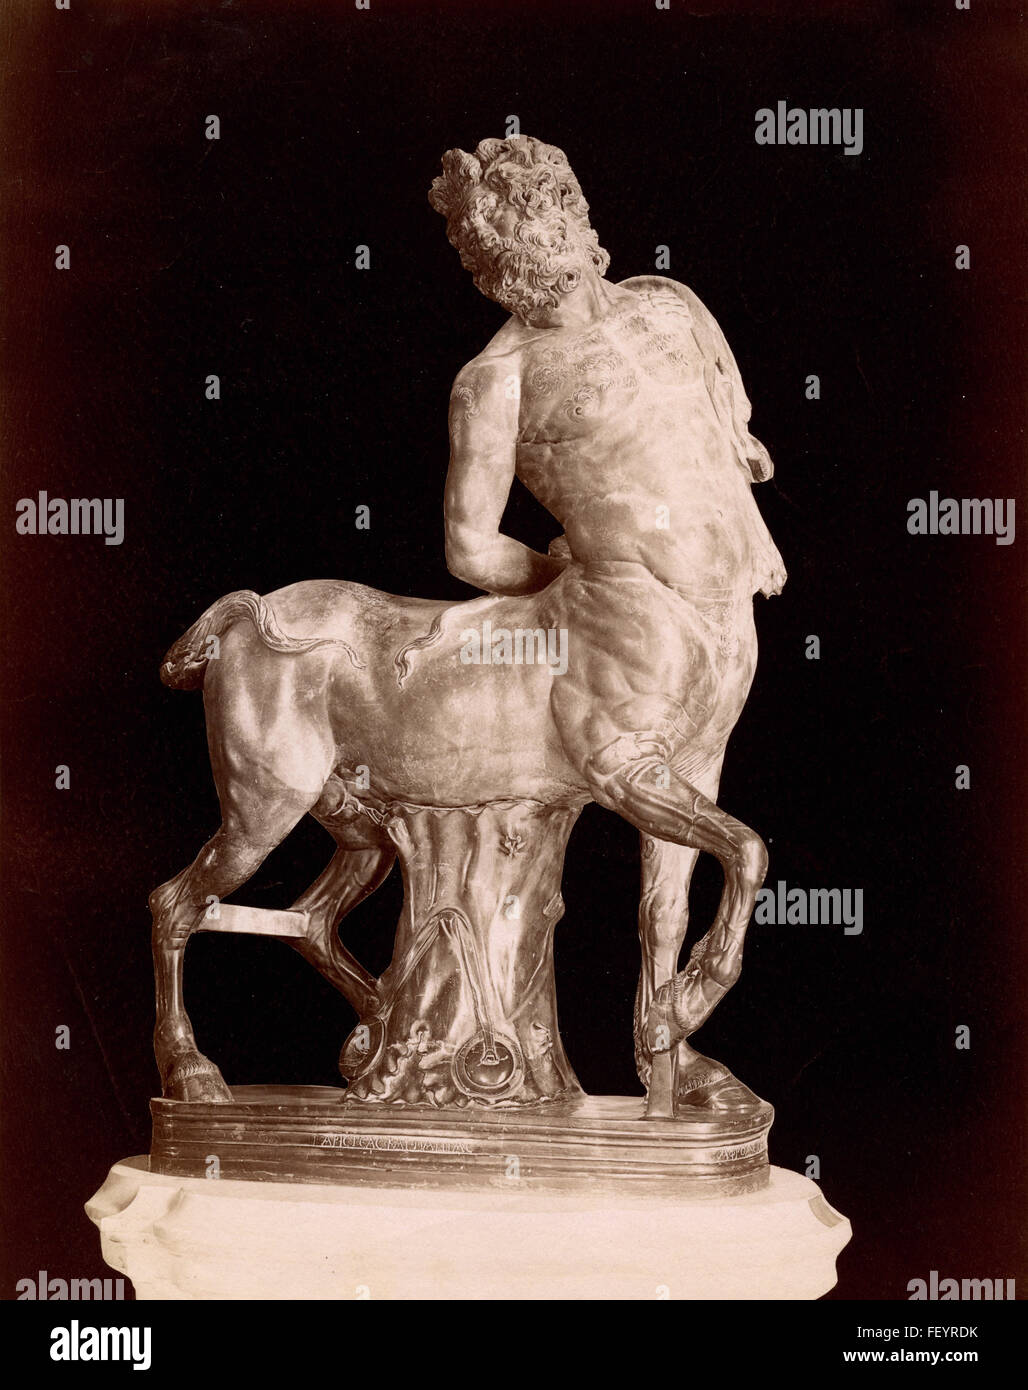 Centaur Aphrodisius in Caria, Roman statue Stock Photo